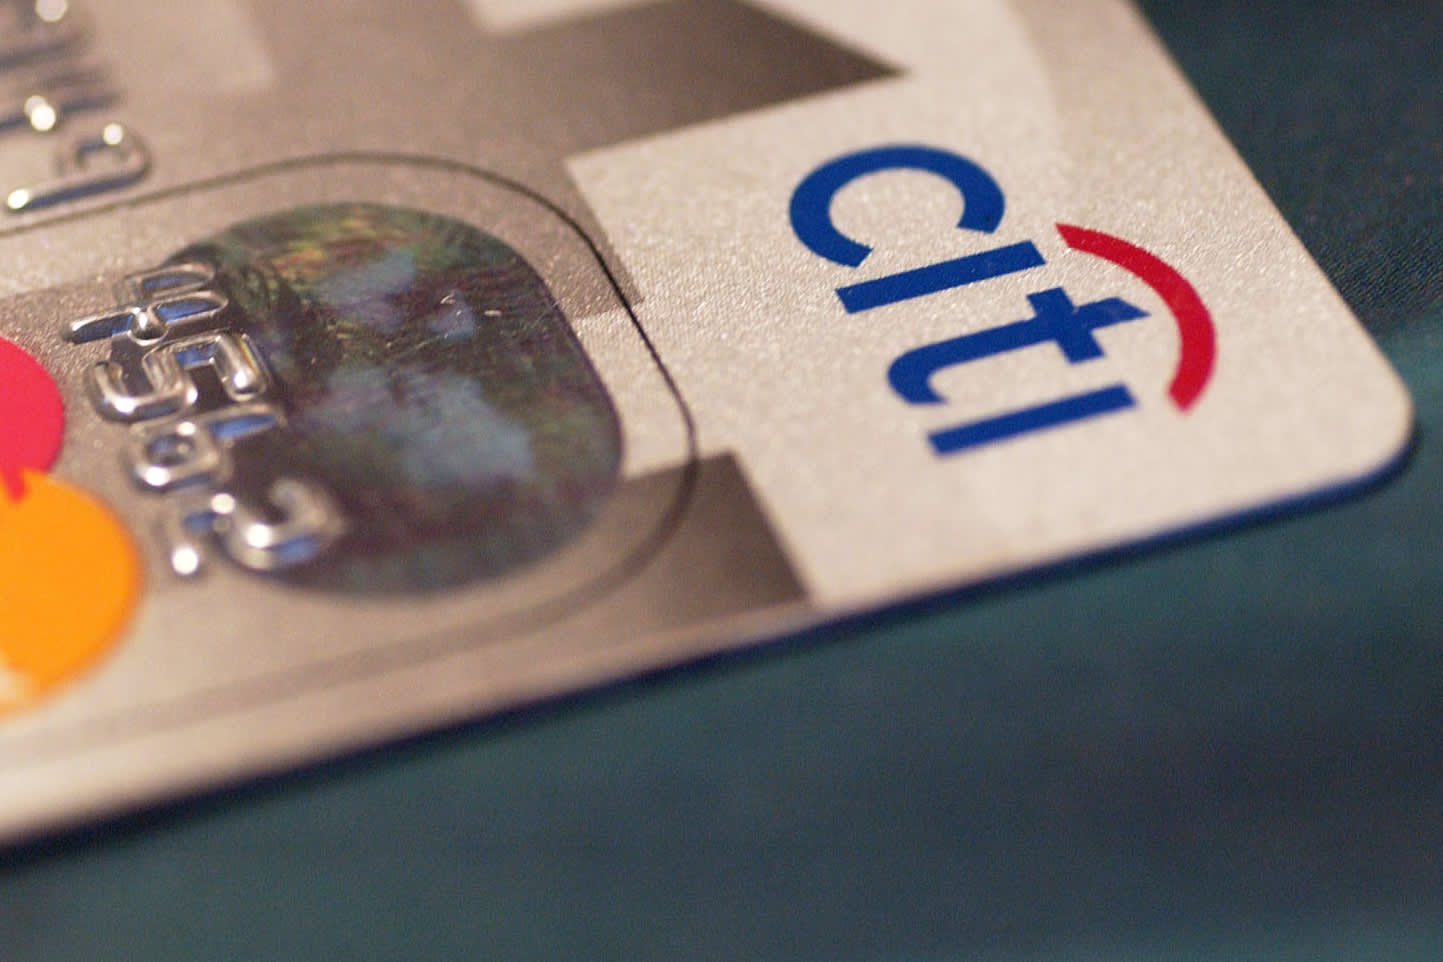 Citi Double Cash offers 2% cash back rewards